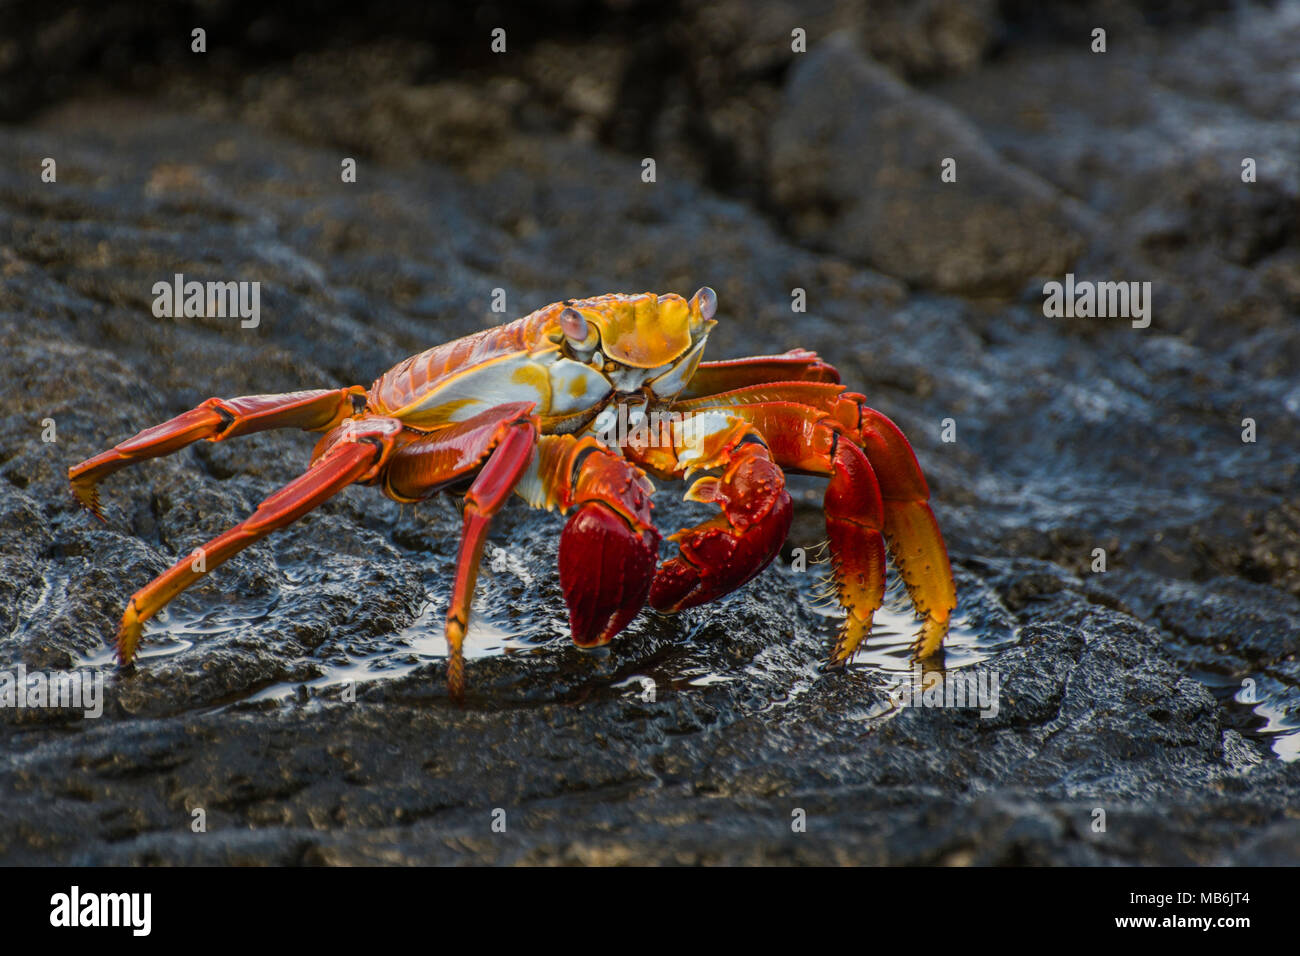 A sally lightfoot crab dalle isole Galapagos, questi granchi carismatico sono una presenza costante sulle coste rocciose delle isole Galapagos. Foto Stock